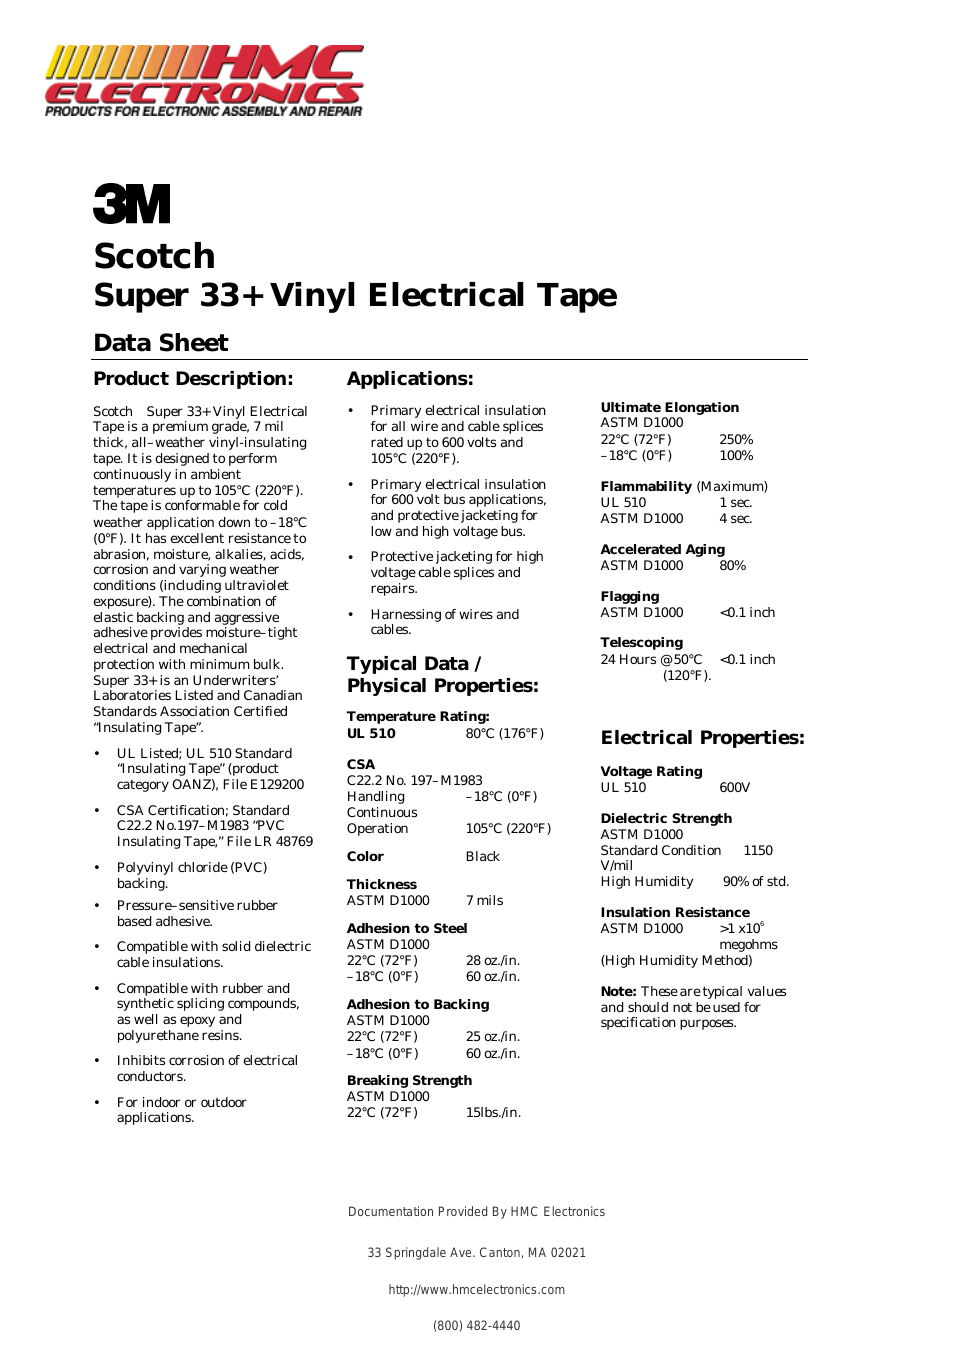 33+SUPER 3M Electrical Tape, Scotch Vinyl